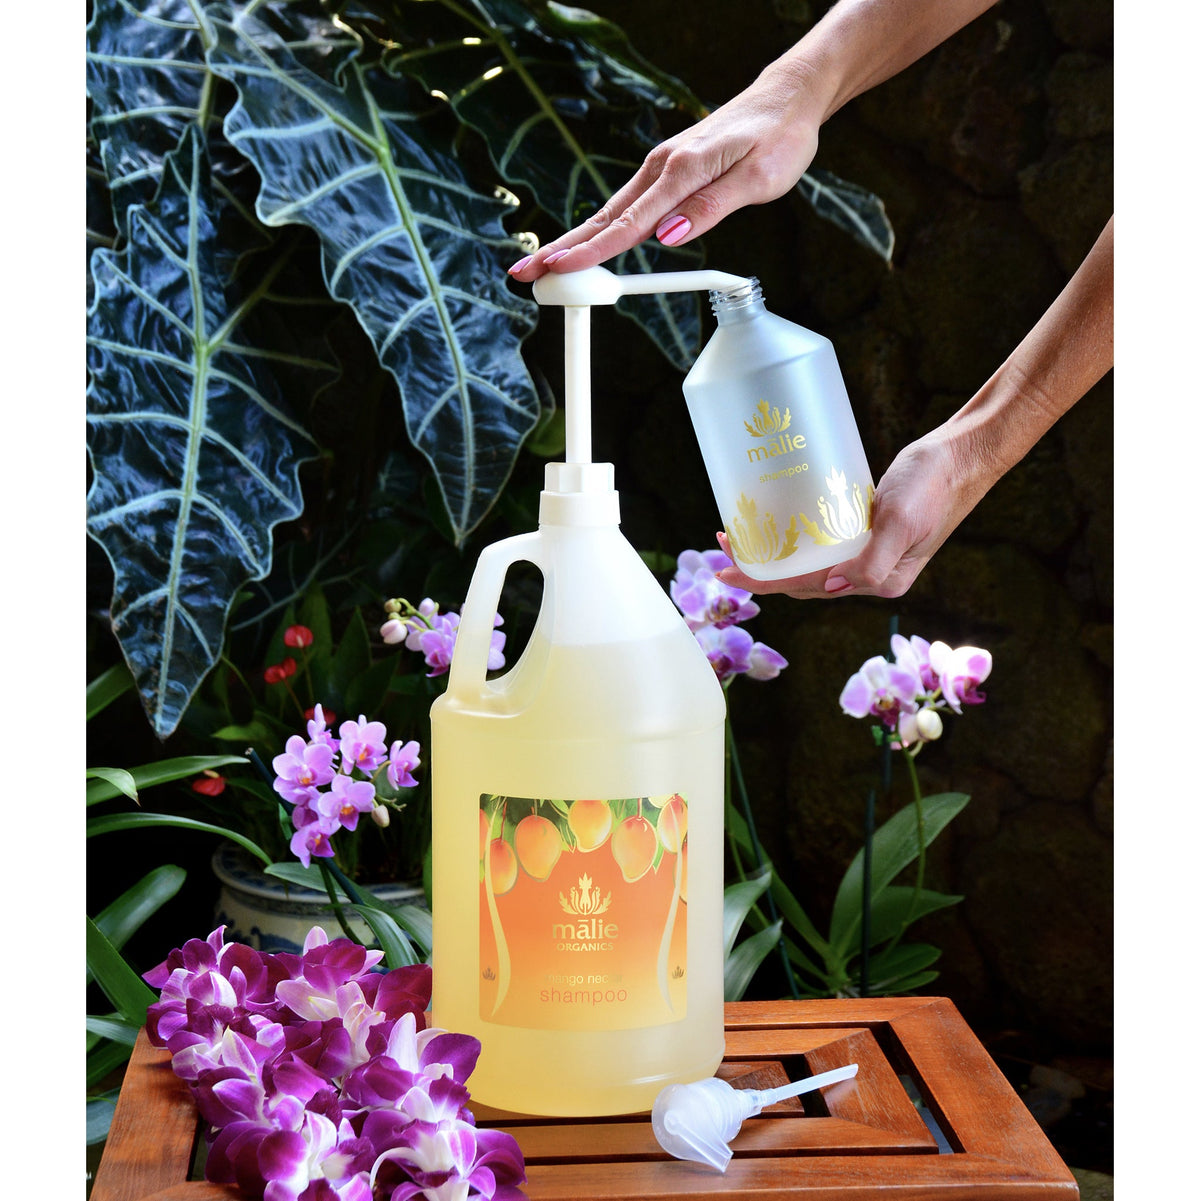 mango nectar shampoo gallon - Eco-Refill